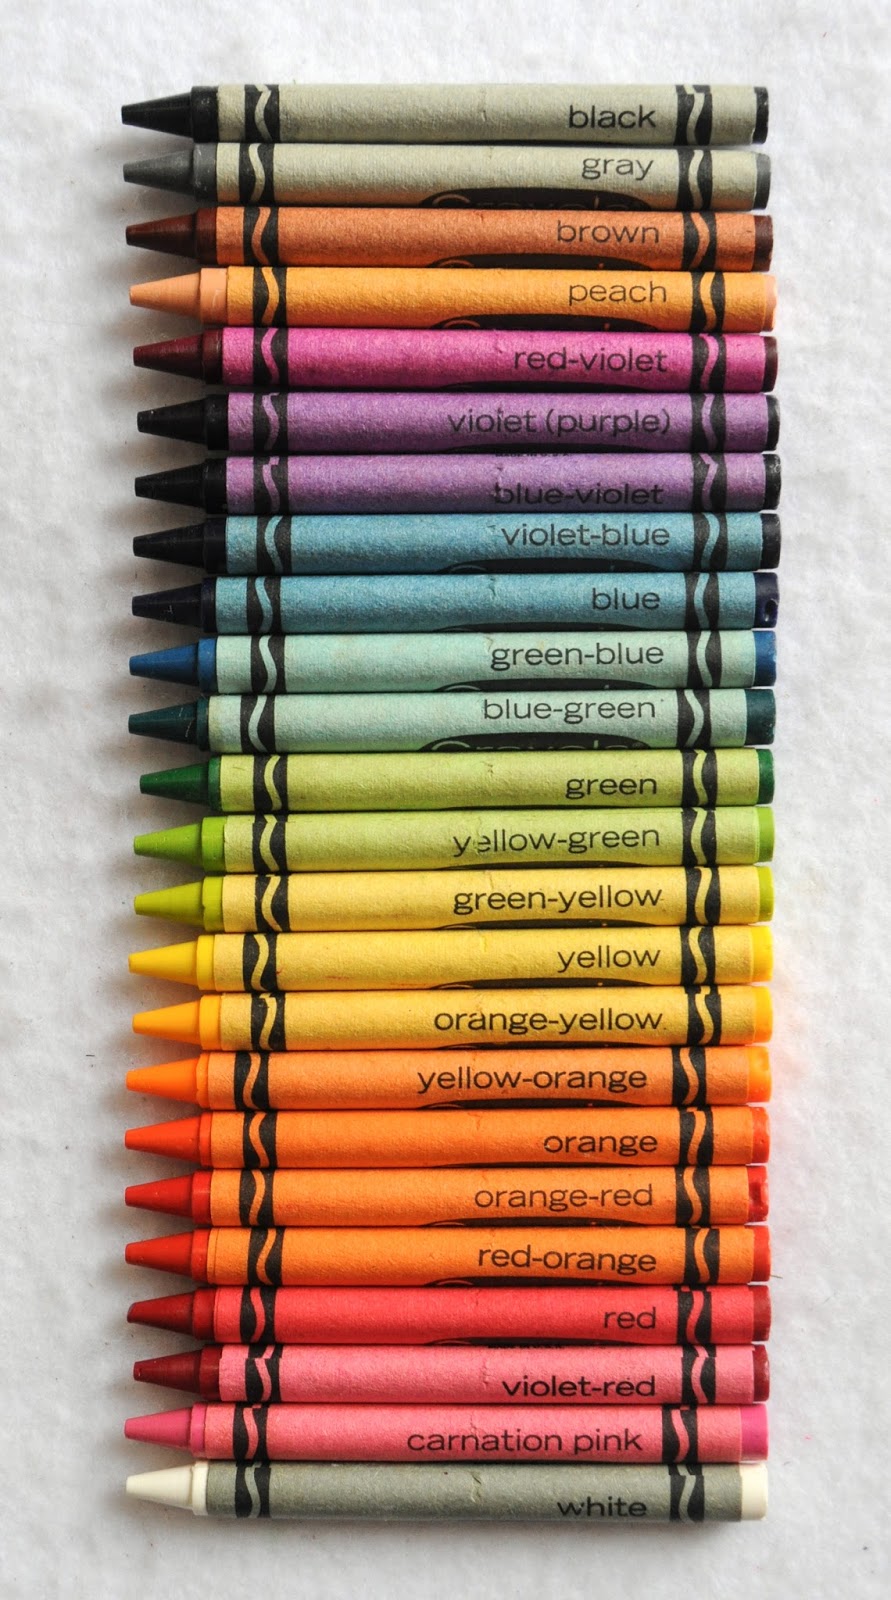 Green Crayola Crayons - 10 Pack